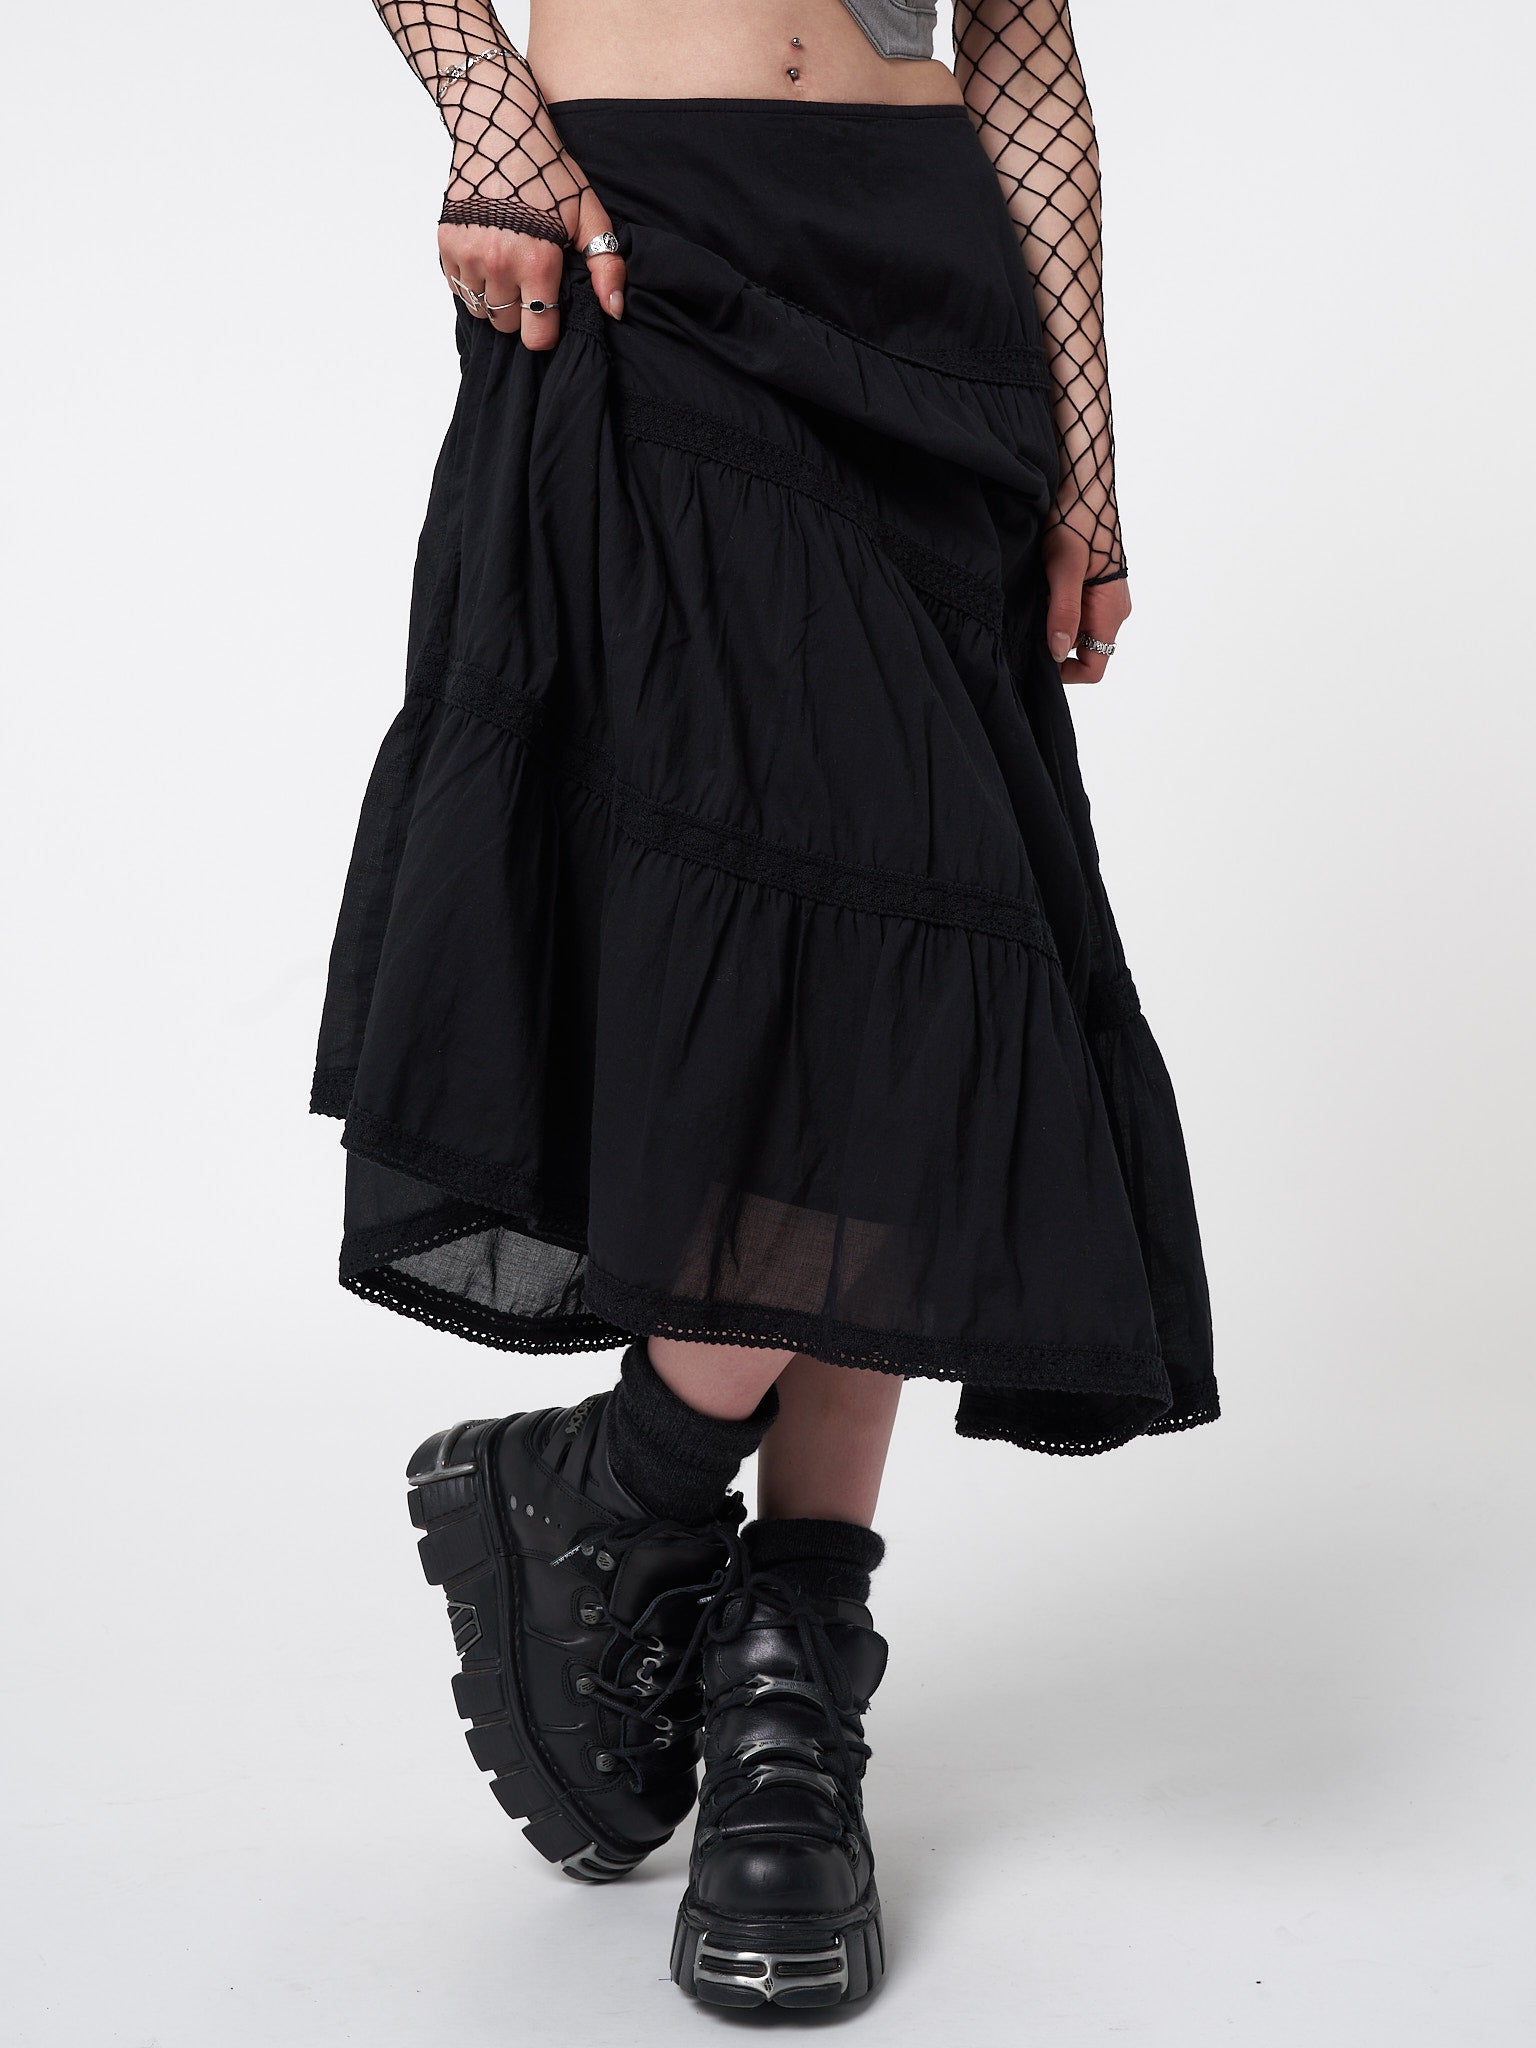 Raven Black Ruffle Lace Maxi Skirt | Minga London – Minga London EU